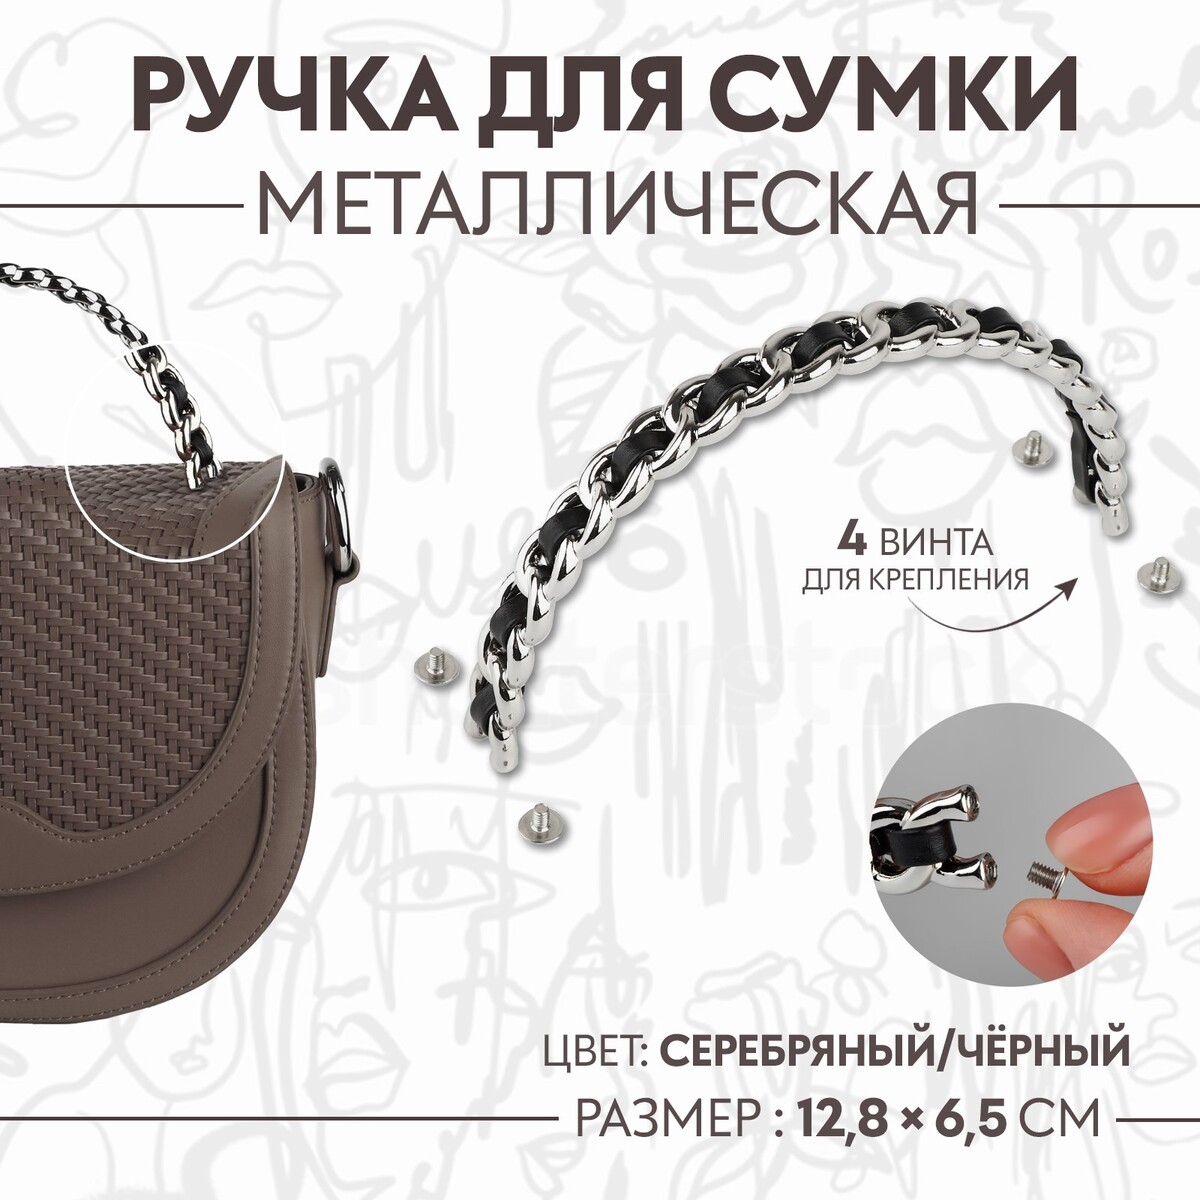 Ручка для сумки, металлическая, с винтами для крепления, 12,8 × 6,5 см, цвет серебряный/черный